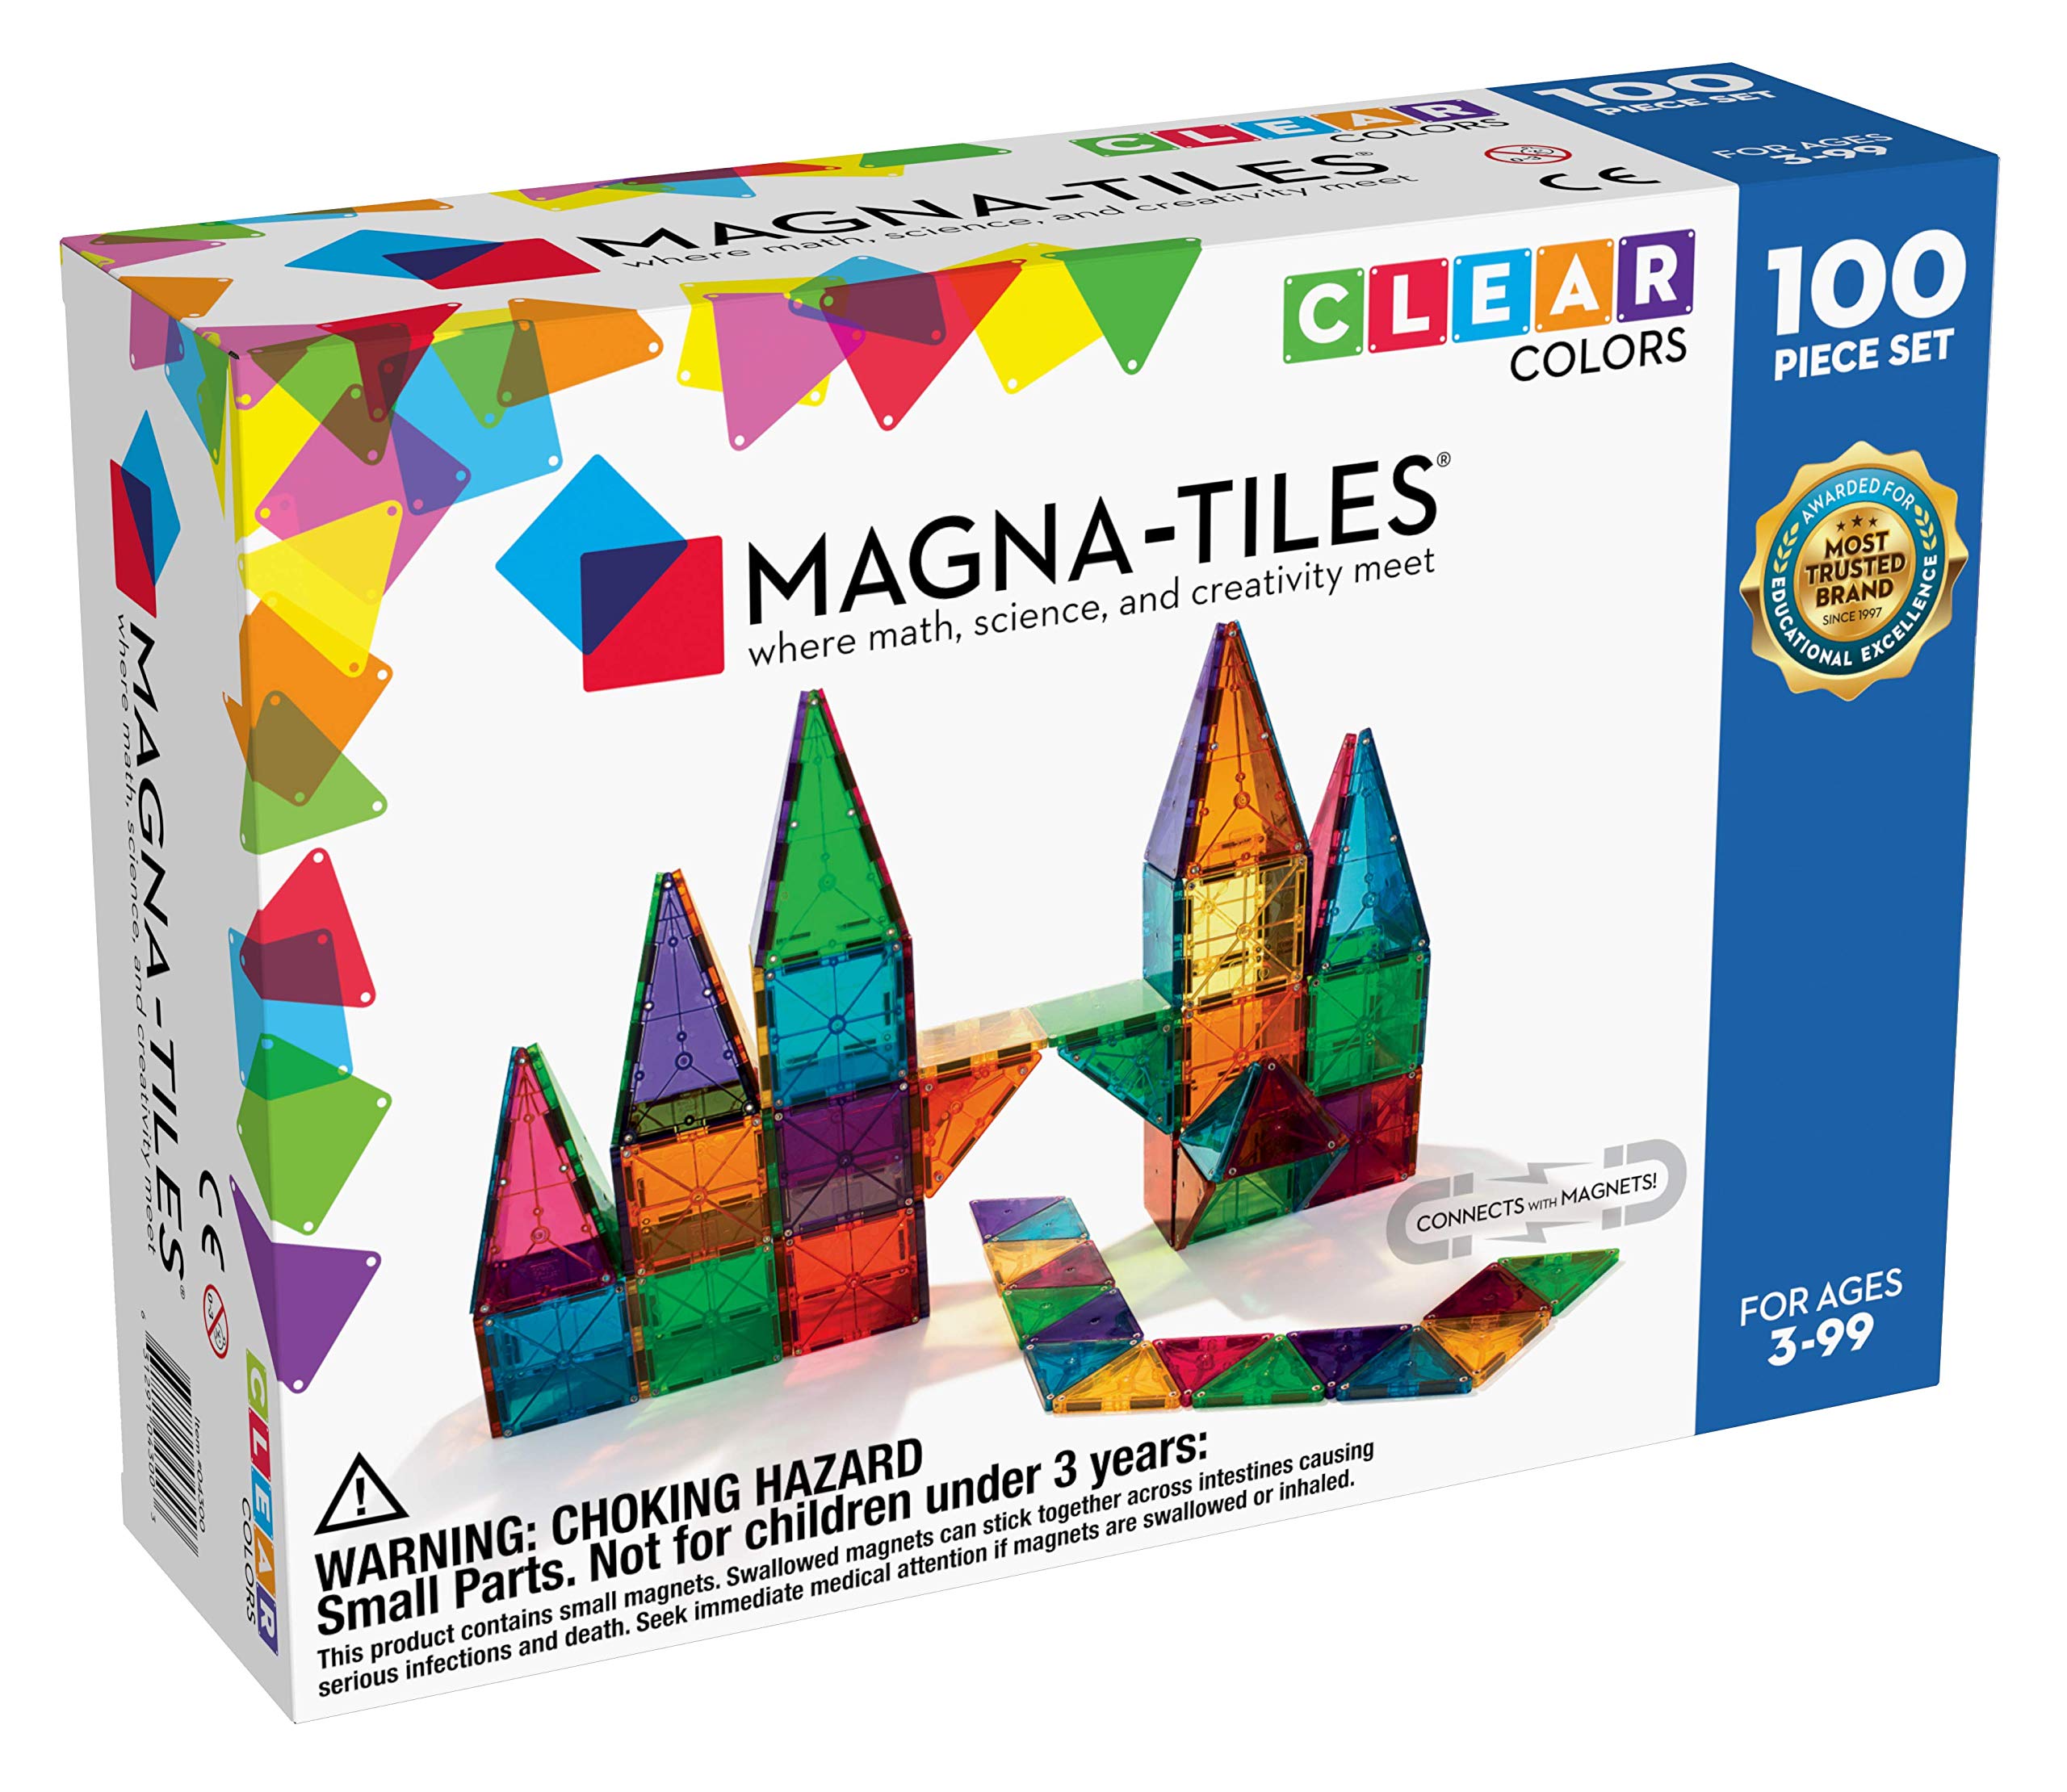  Magna Tiles Magna-Tiles 100 ピース クリア カラー セット、クリエイティブな自由な遊びのためのオリジナルの磁気建築タイル、3 歳以上の子供向けの知育玩具...